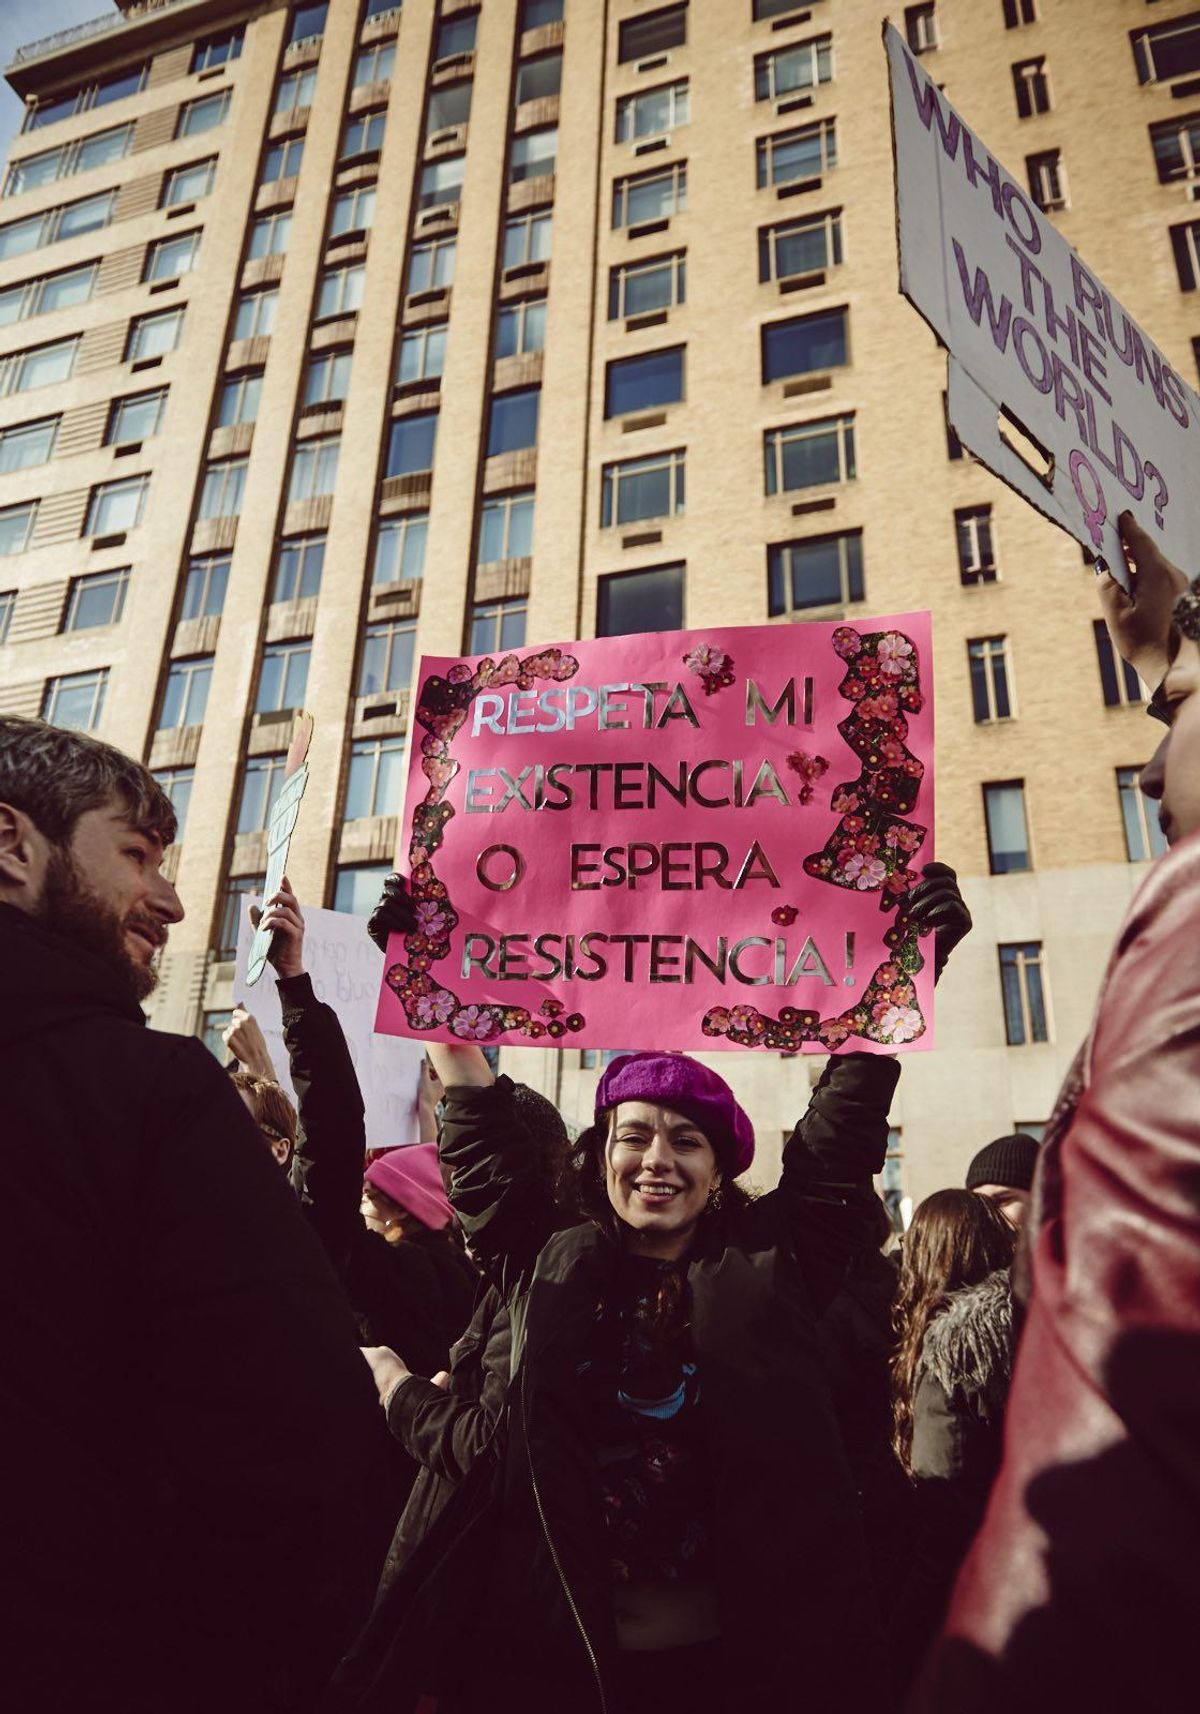 Women's March